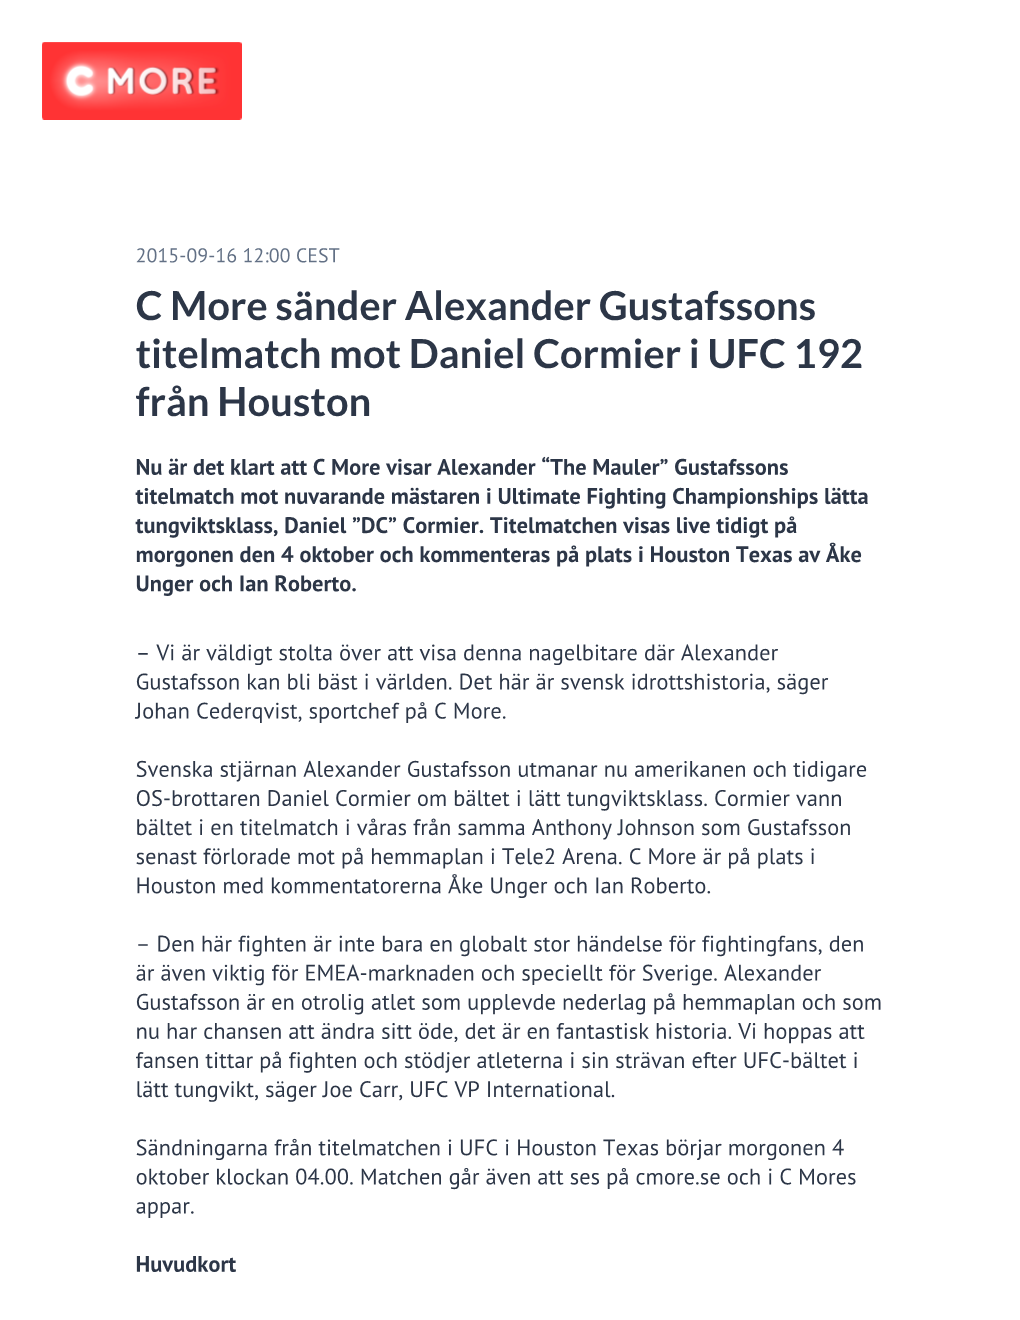 C More Sänder Alexander Gustafssons Titelmatch Mot Daniel Cormier I UFC 192 Från Houston